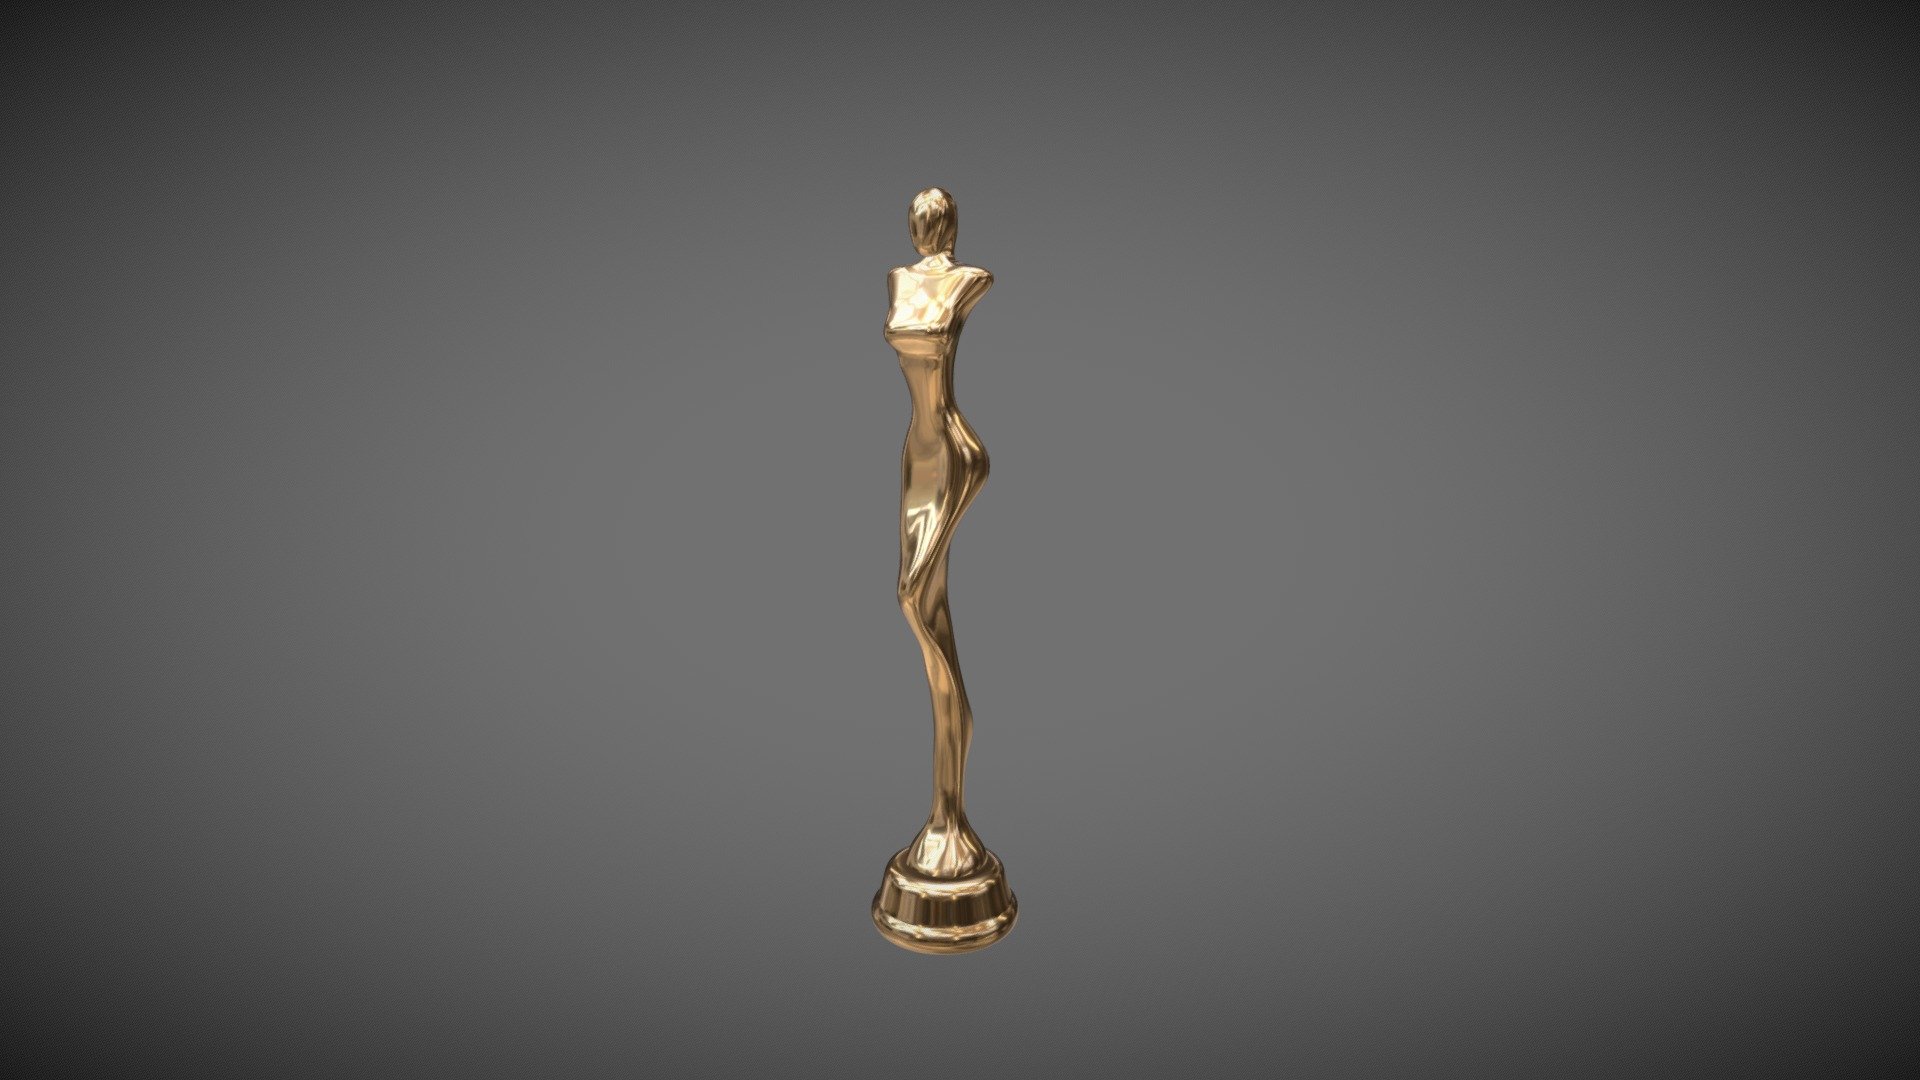 Simple trophy in stylized female form 3d model